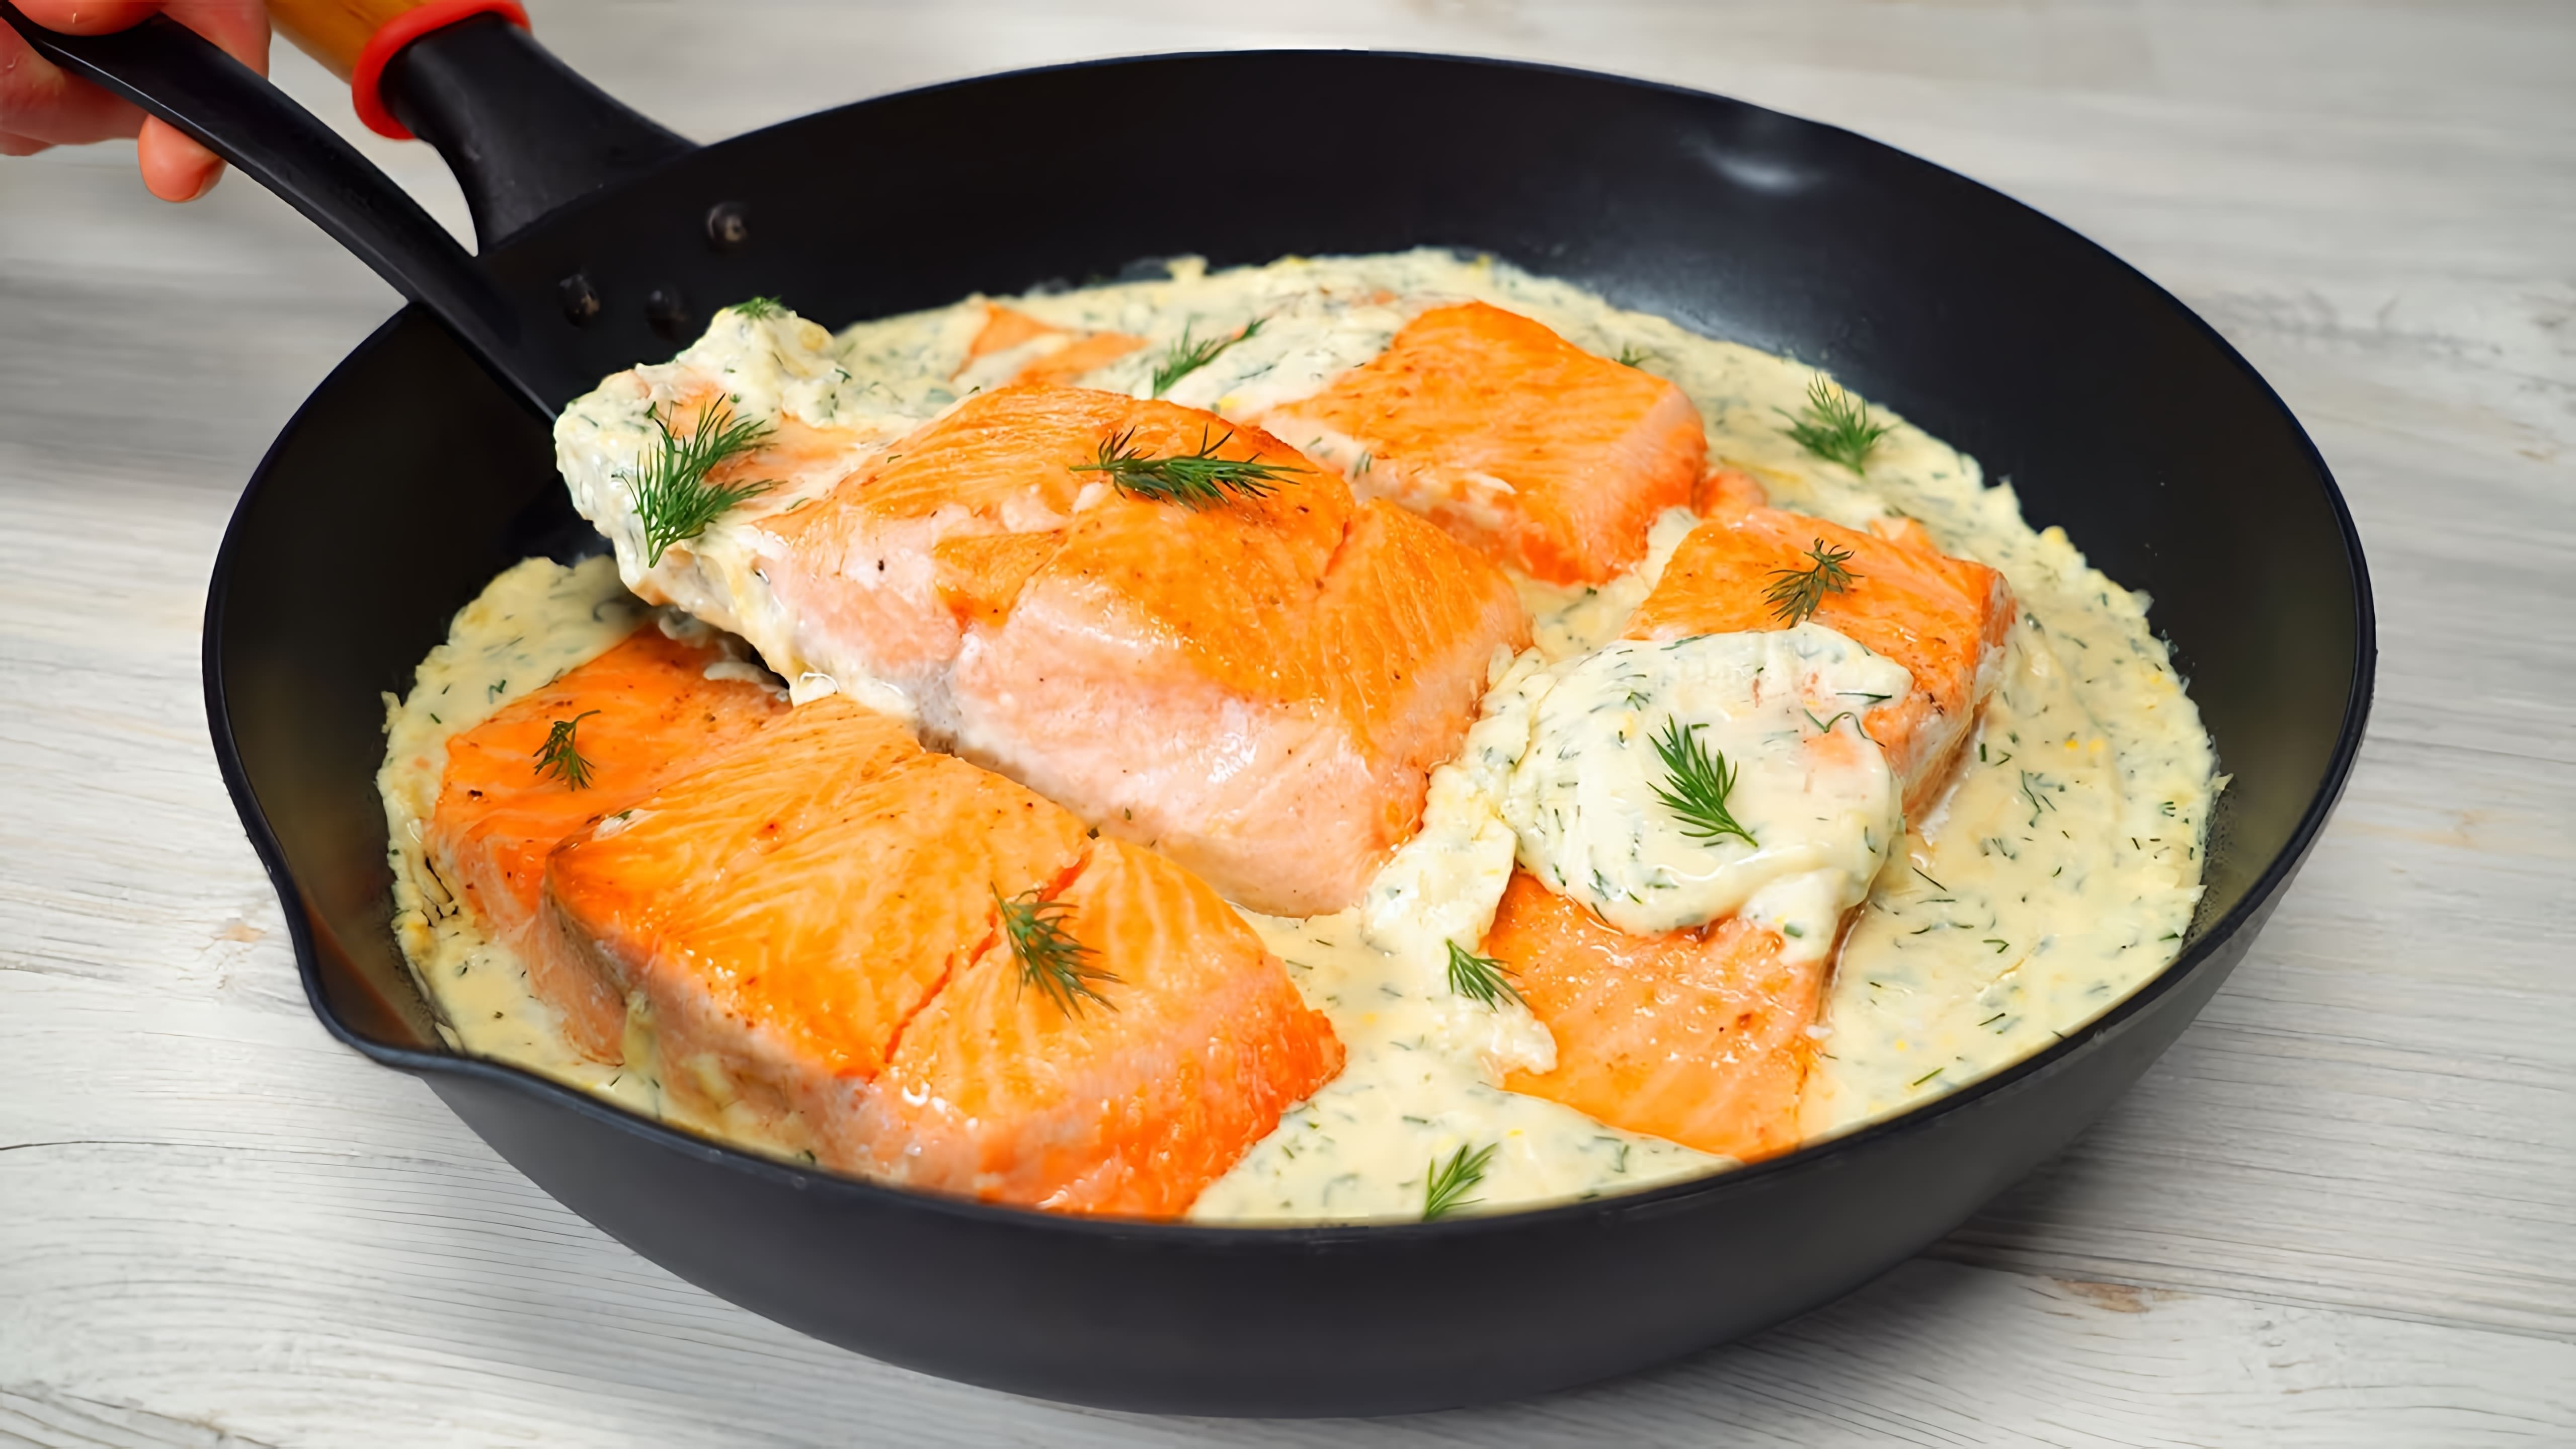 Видео рецепт лосося в сливочном соусе, который занимает около 20 минут